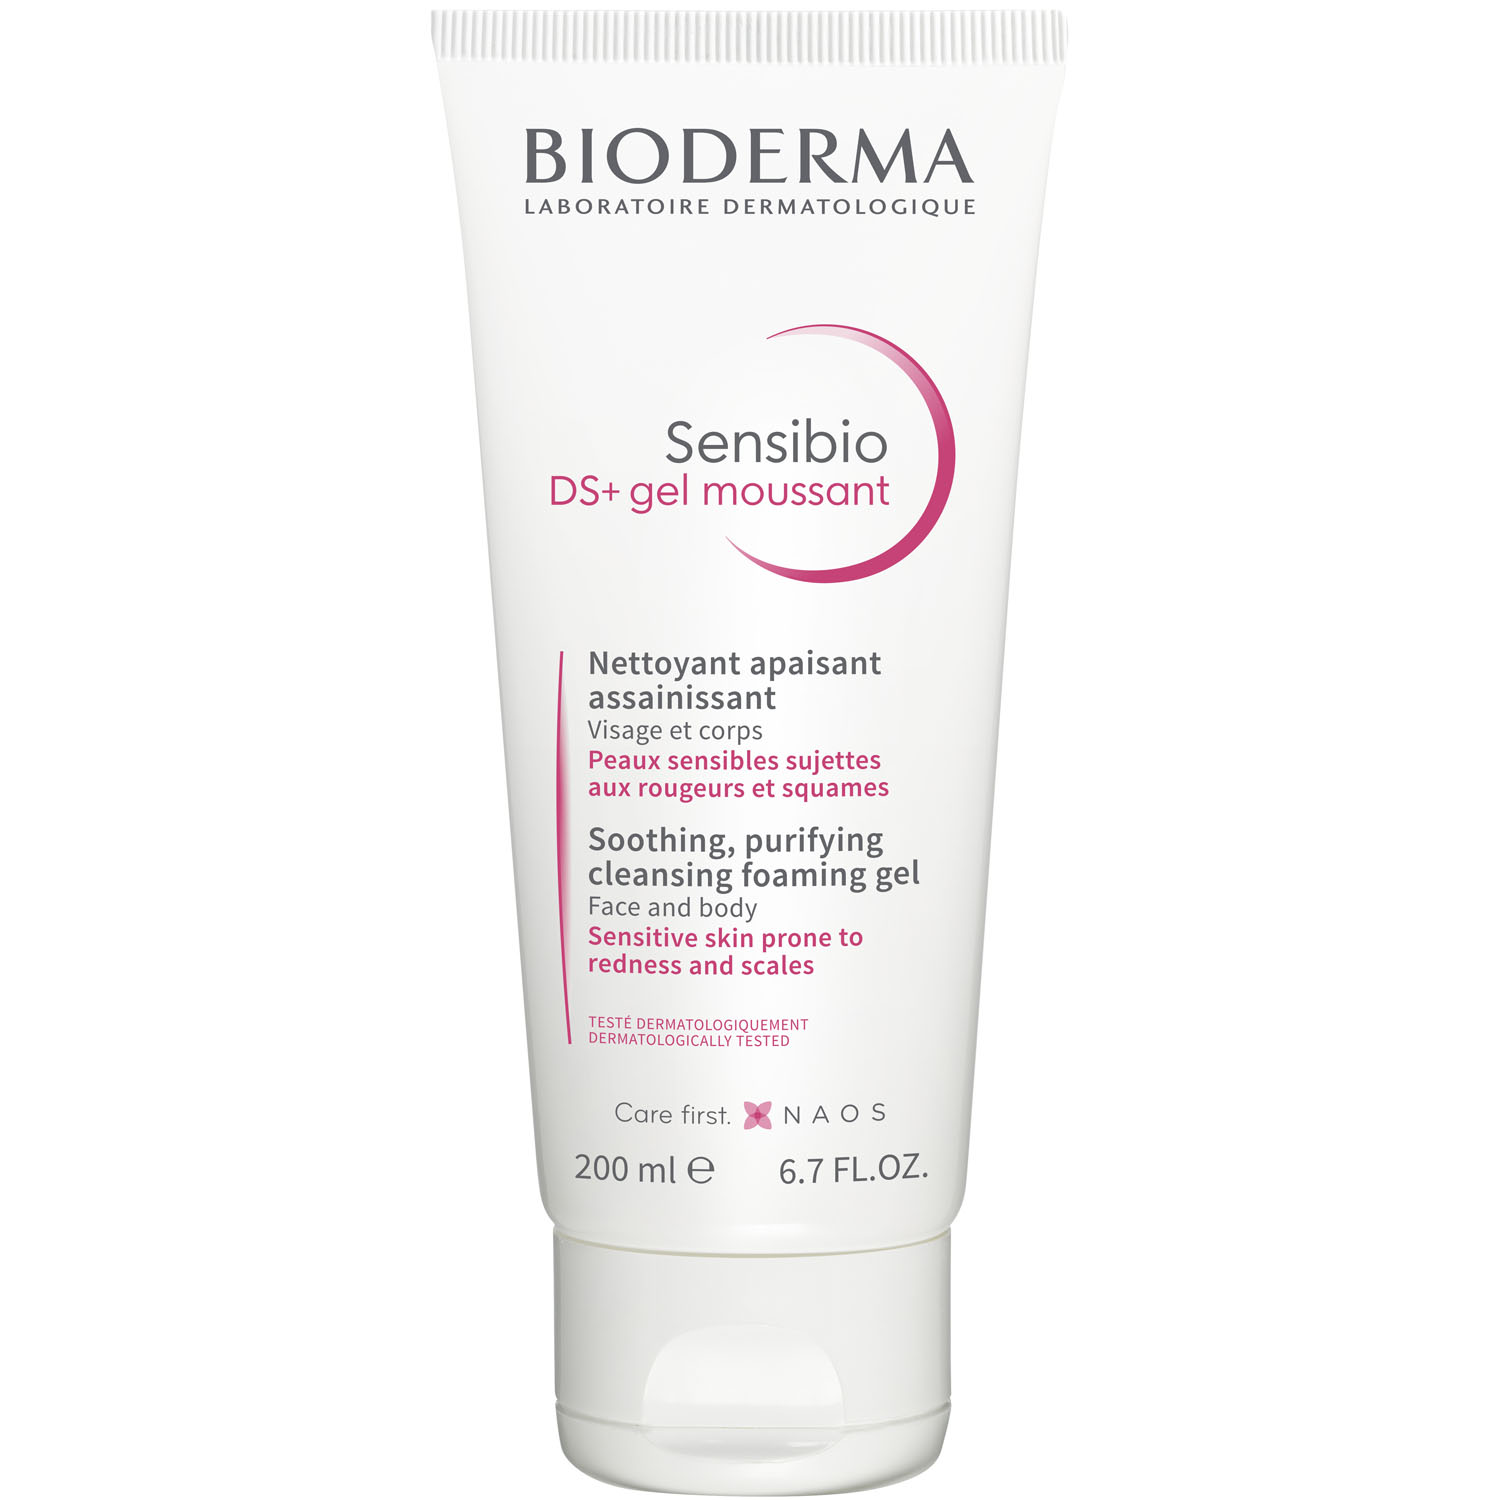 Bioderma Очищающий гель для кожи с покраснениями и шелушениями DS+, 200 мл (Bioderma, Sensibio) гель для умывания bioderma очищающий гель против раздражения и шелушения кожи sensibio ds